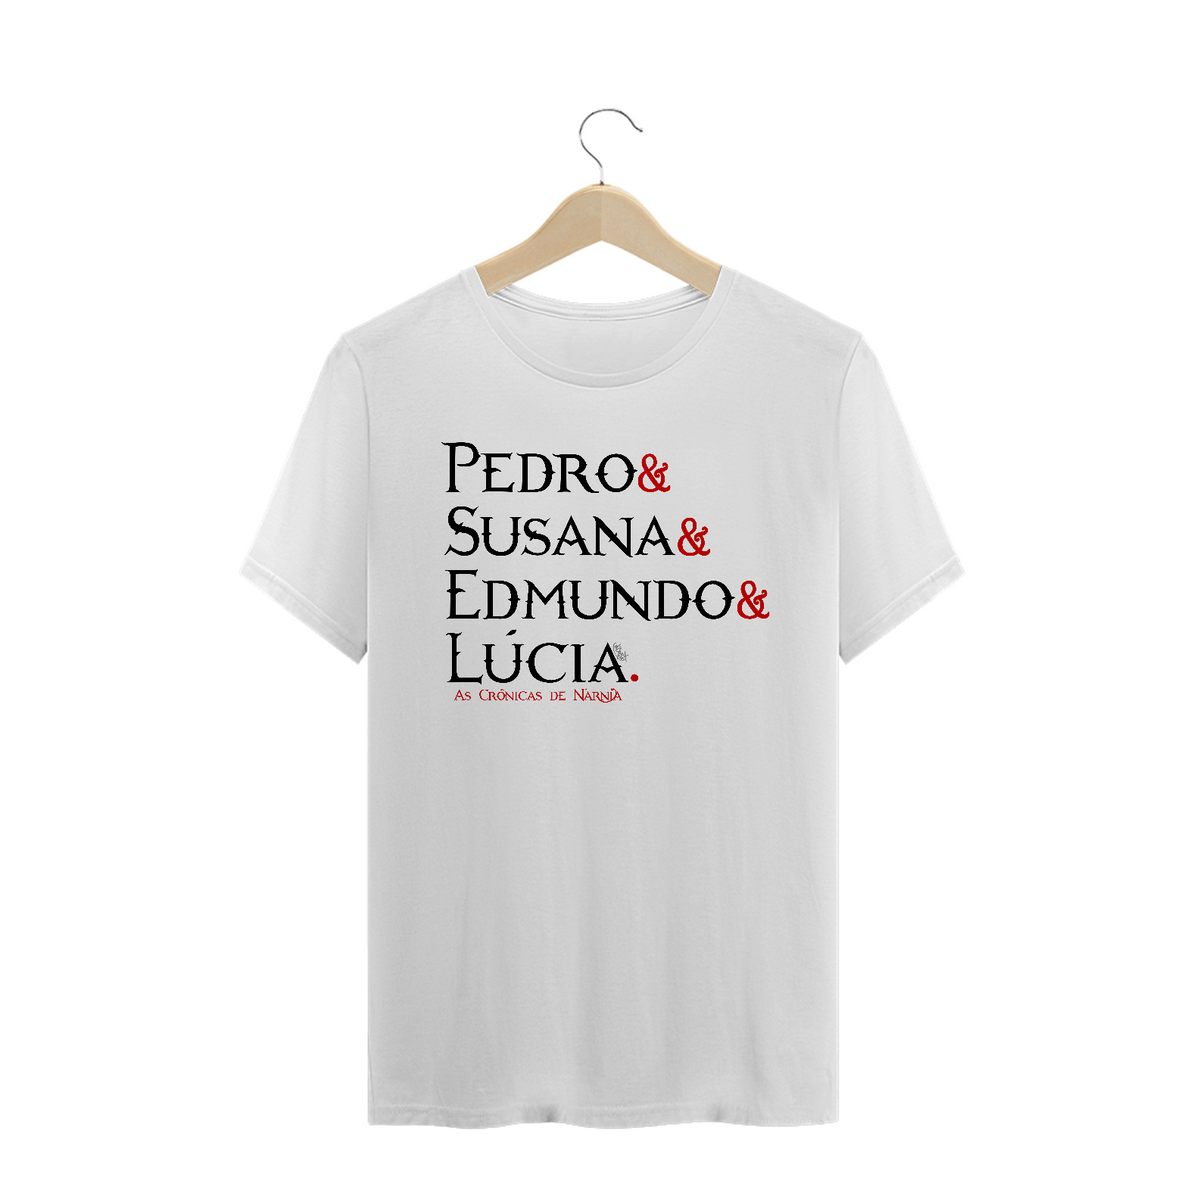 Nome do produto: Camiseta Pedro, Susana, Edmundo e Lúcia - cores claras [As Crônicas de Nárnia]